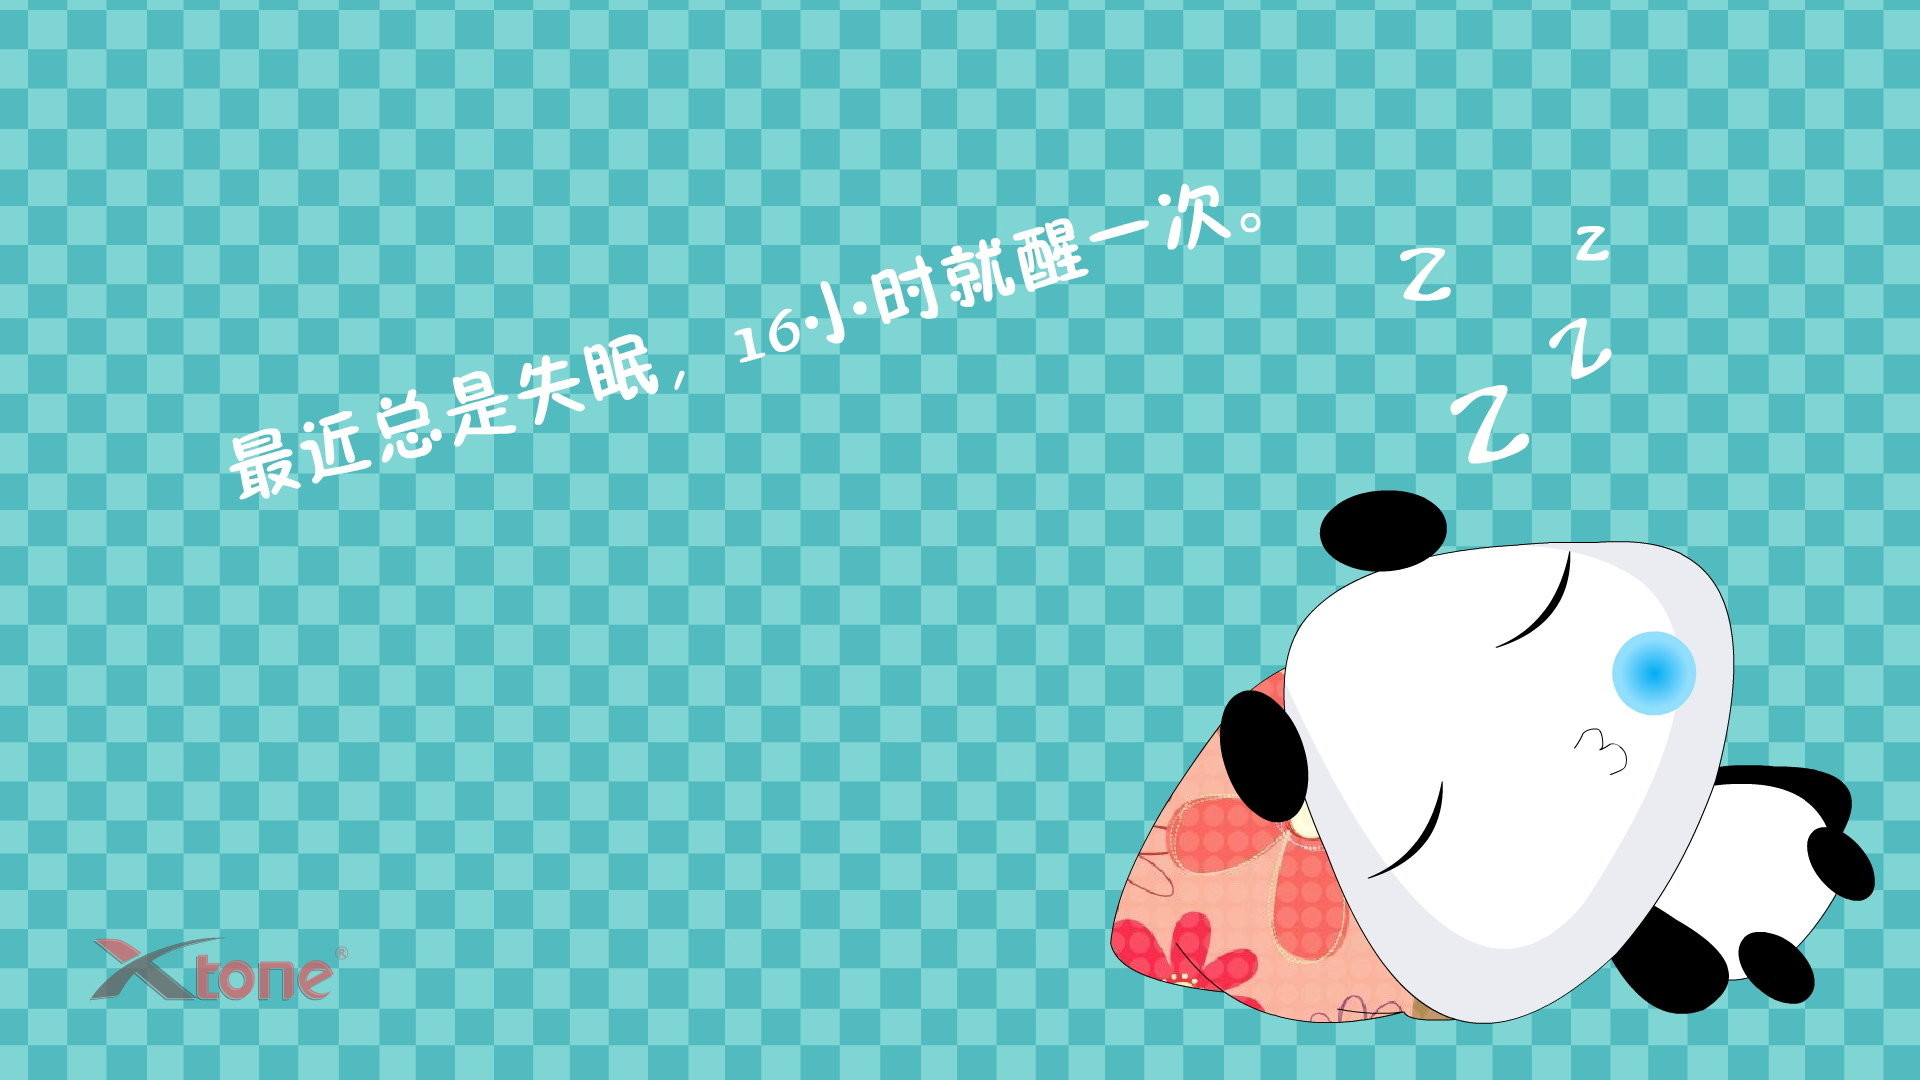 Anime Kawaii Panda Wallpapers